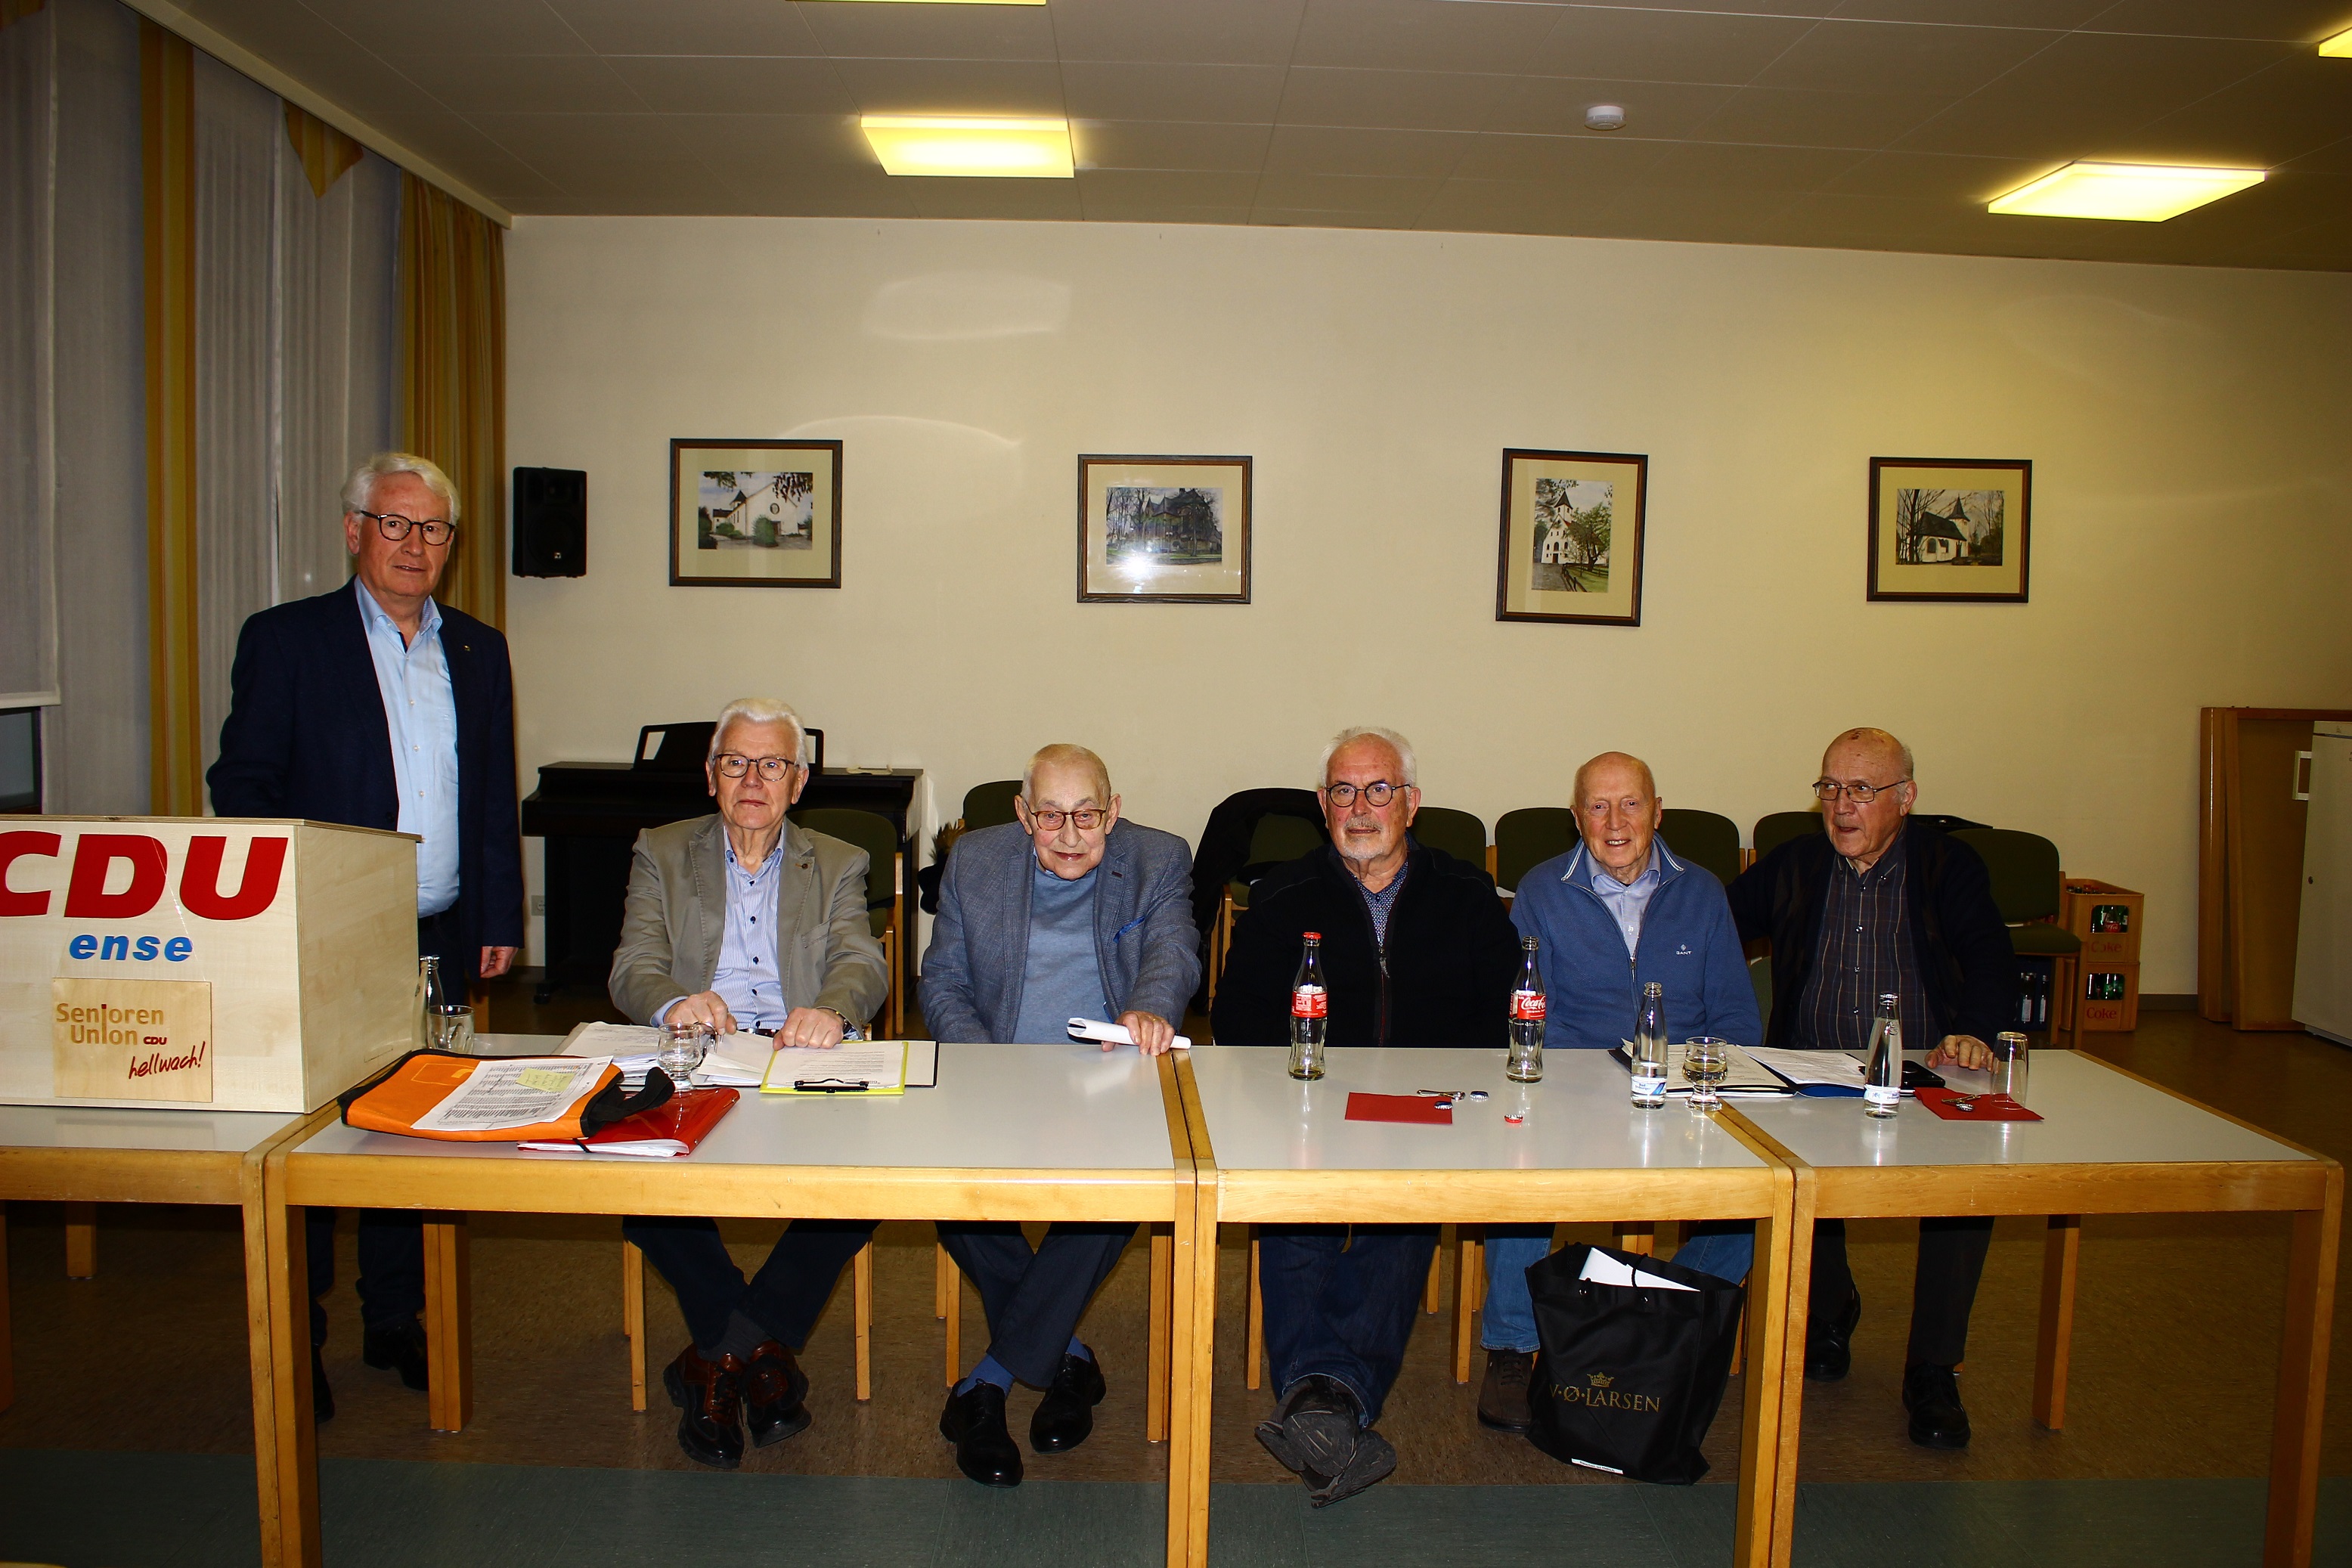 Foto v.l.n.r.: Hans-Josef Langesberg, Friedhelm Wüllner, Rolf-Dieter Golücke, Theo Kies, Jürgen Post, Dieter Kieseheuer